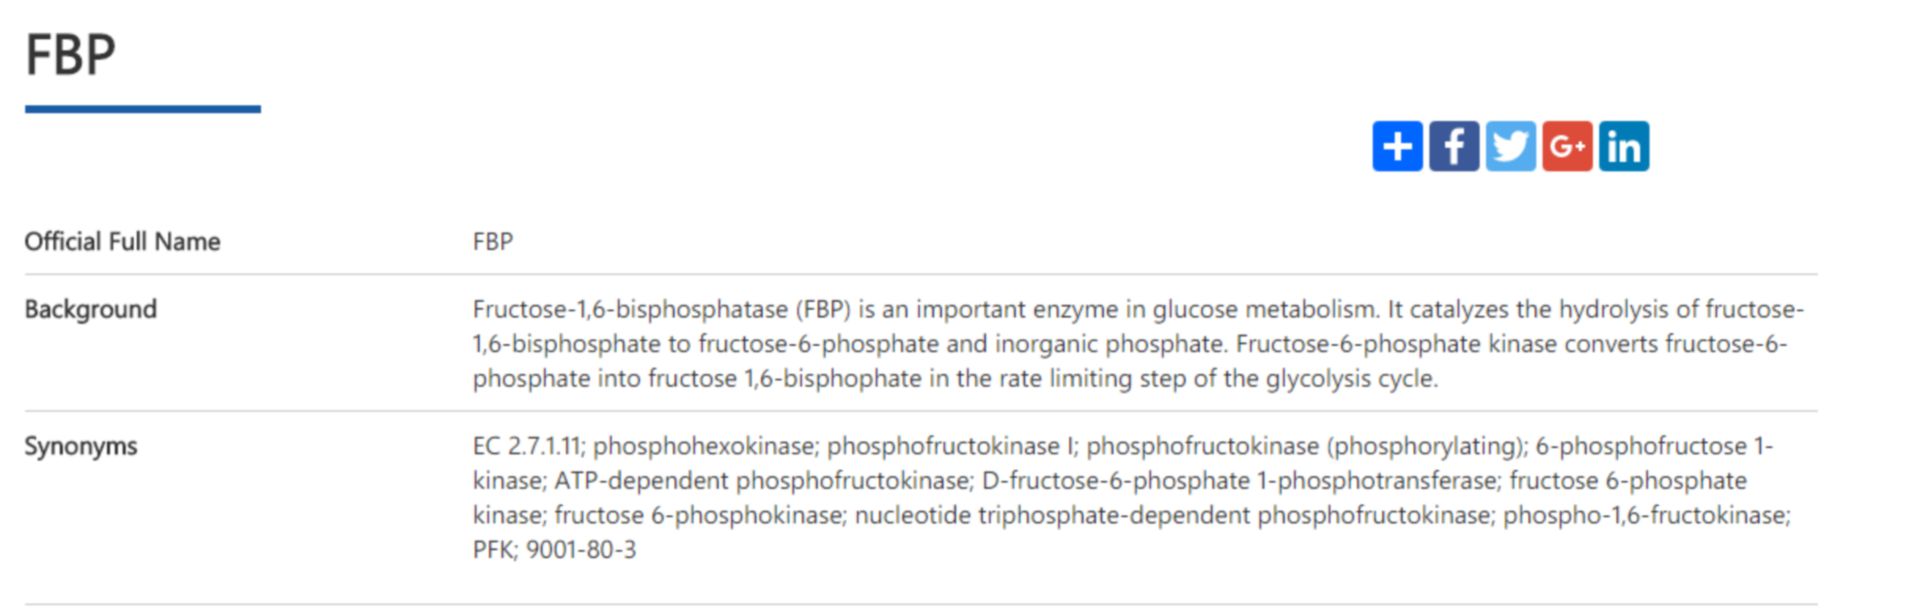 fructose bisphosphatase